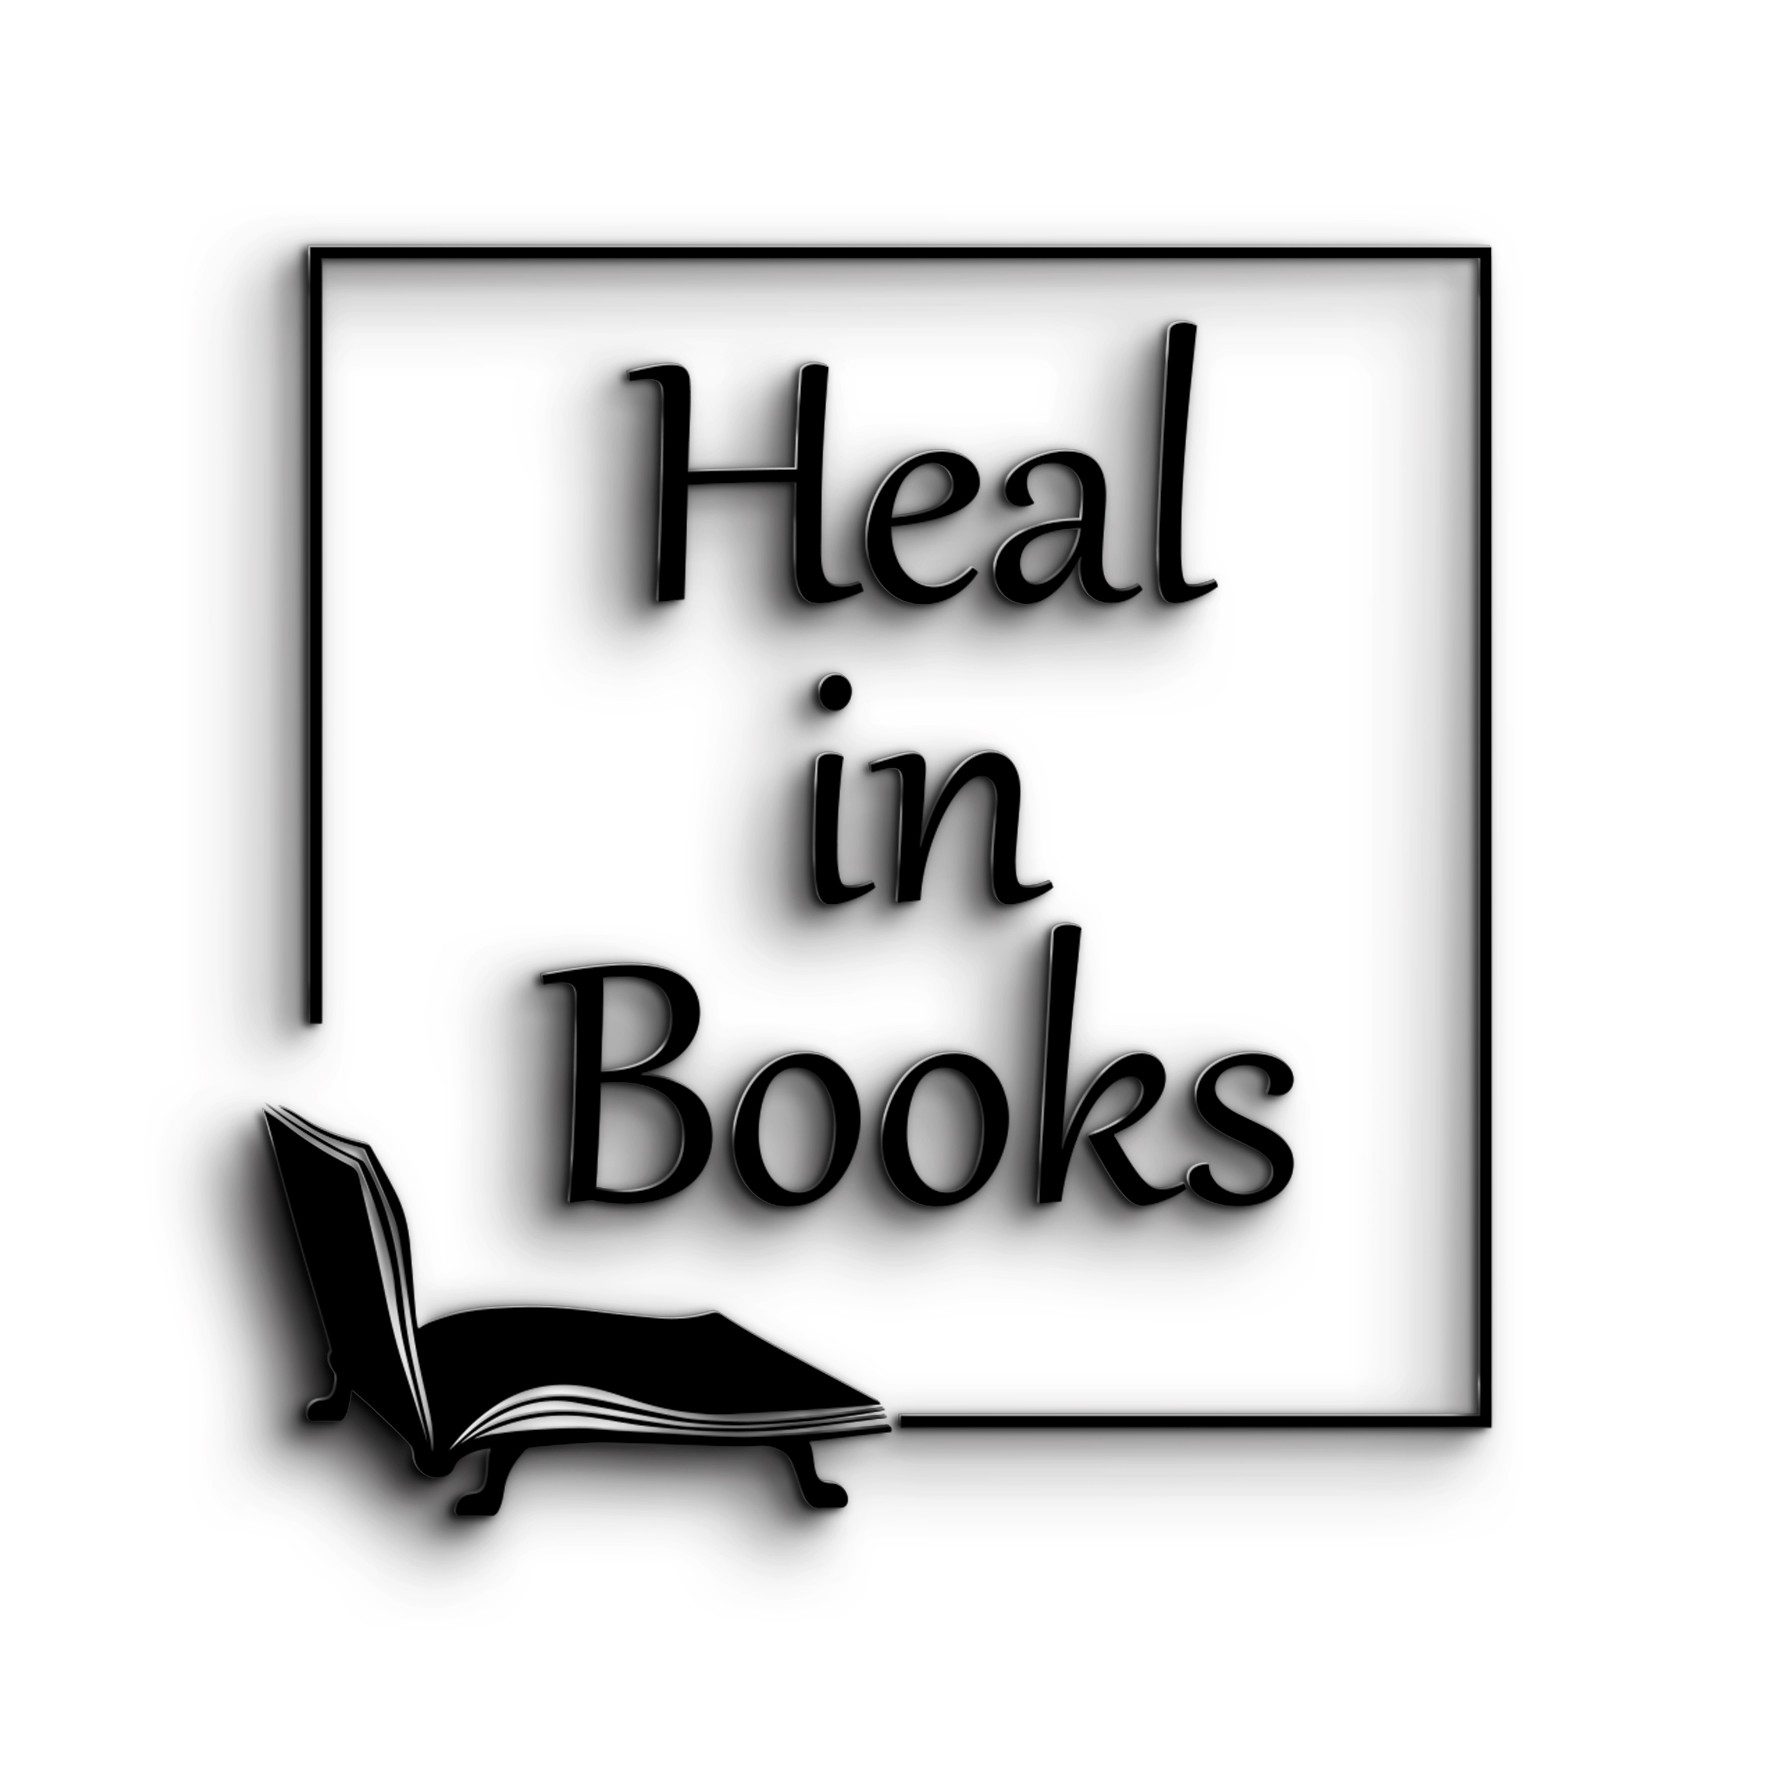 Στην εικόνα αναγράφεται η επωνυμία Heal in Books μέσα σε ένα ανοιχτό τετράγωνο. Απεικονίζεται ένα θεραπευτικό ντιβάνι φτιαγμένο από ένα ανοιχτό βιβλίο.